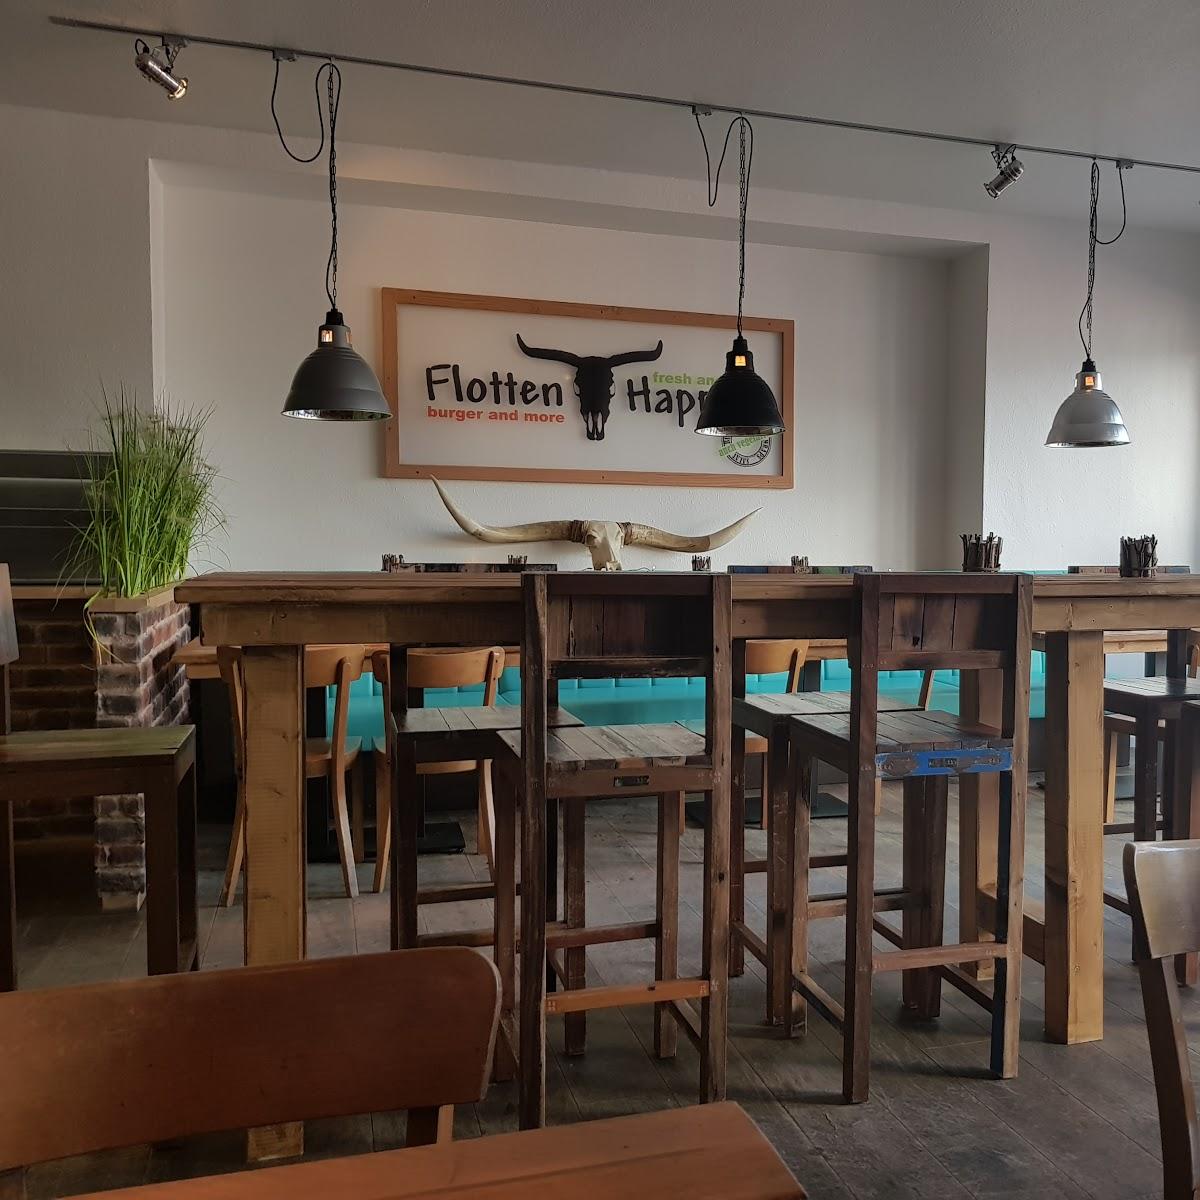 Restaurant "Flotten Happen" in Langeoog